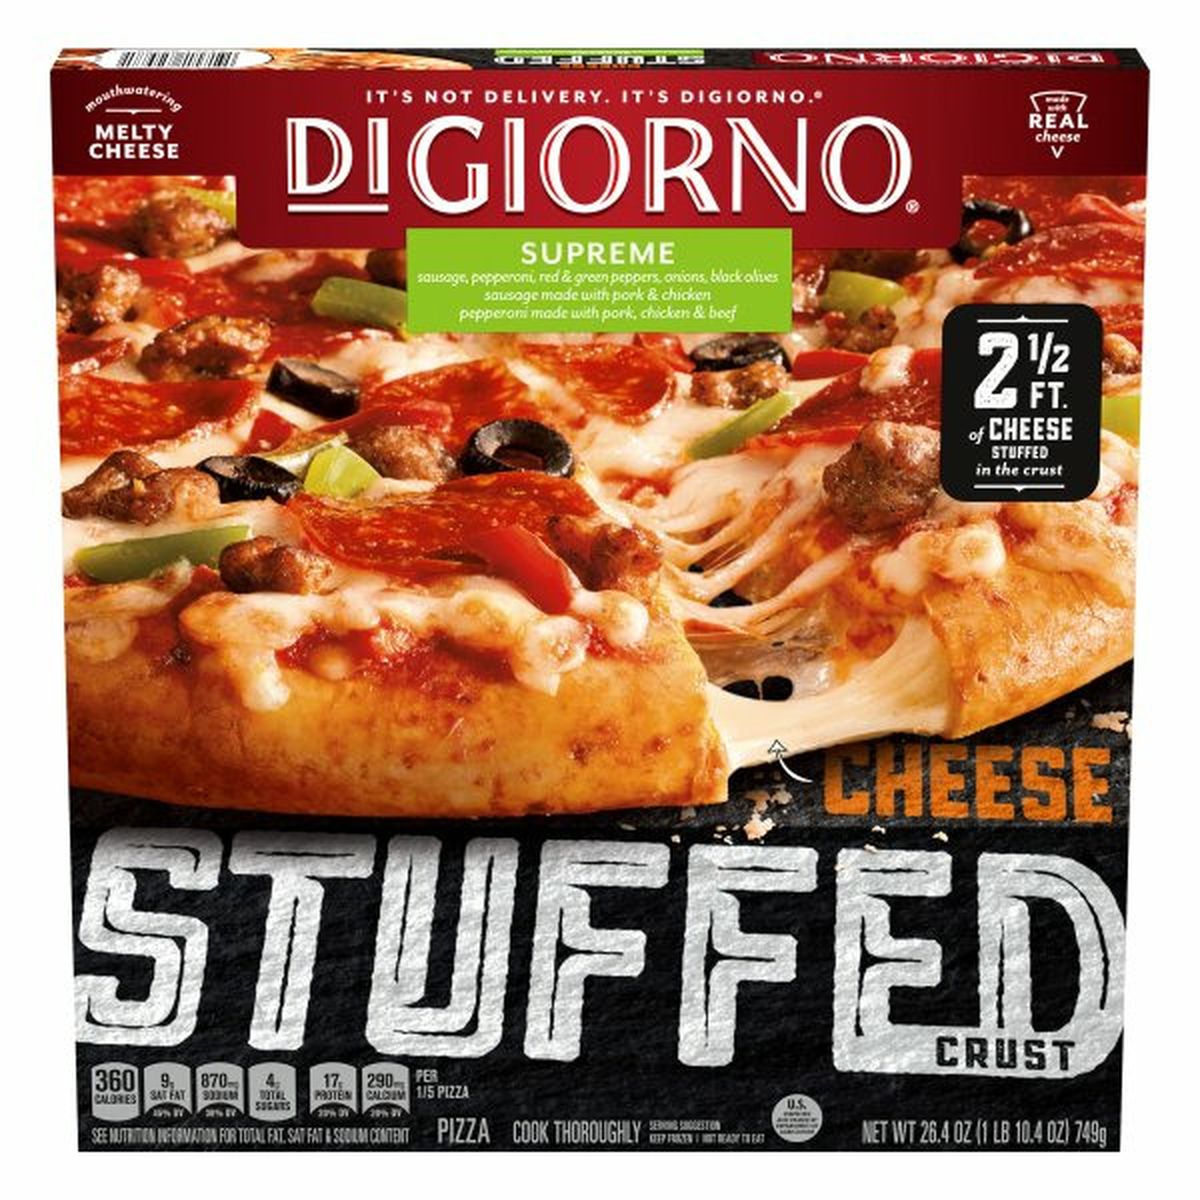 Calories in DiGiorno Pizza, Cheese Stuffed Crust, Supreme